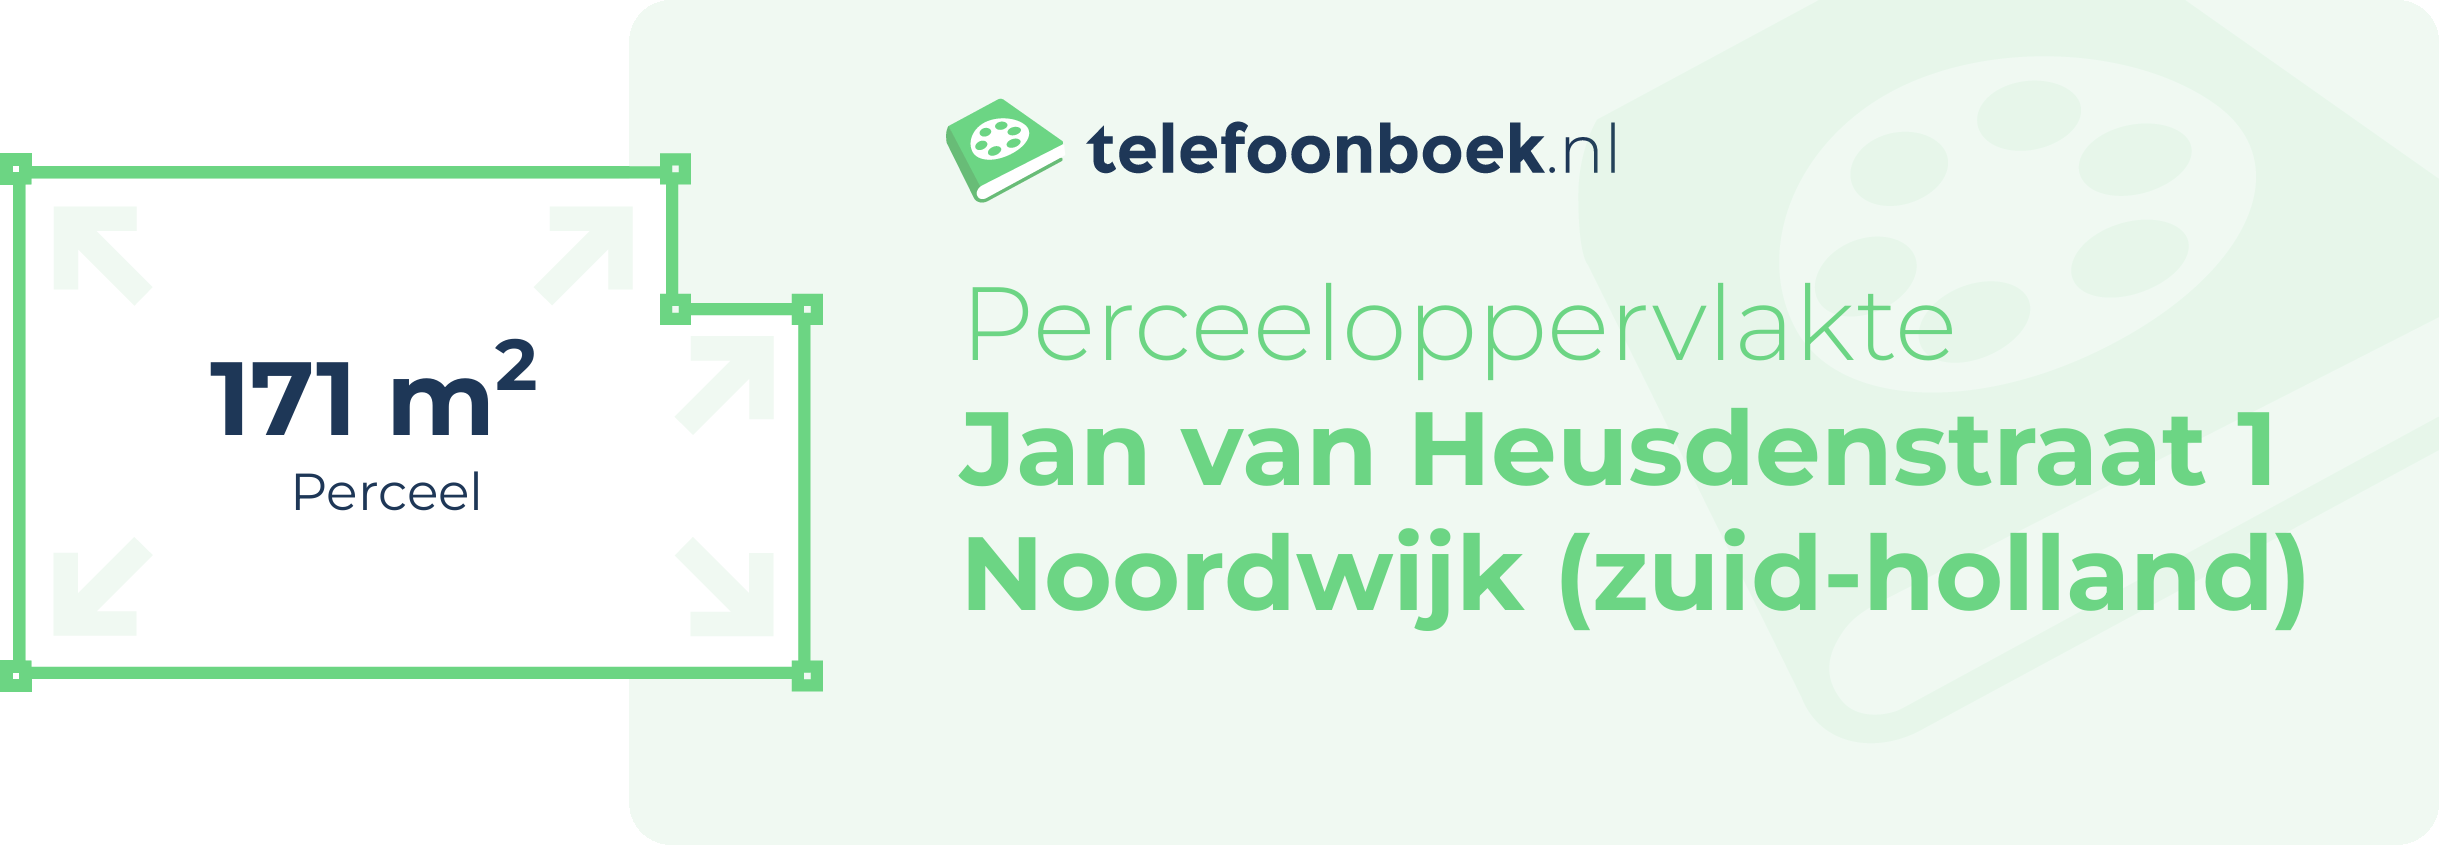 Perceeloppervlakte Jan Van Heusdenstraat 1 Noordwijk (Zuid-Holland)